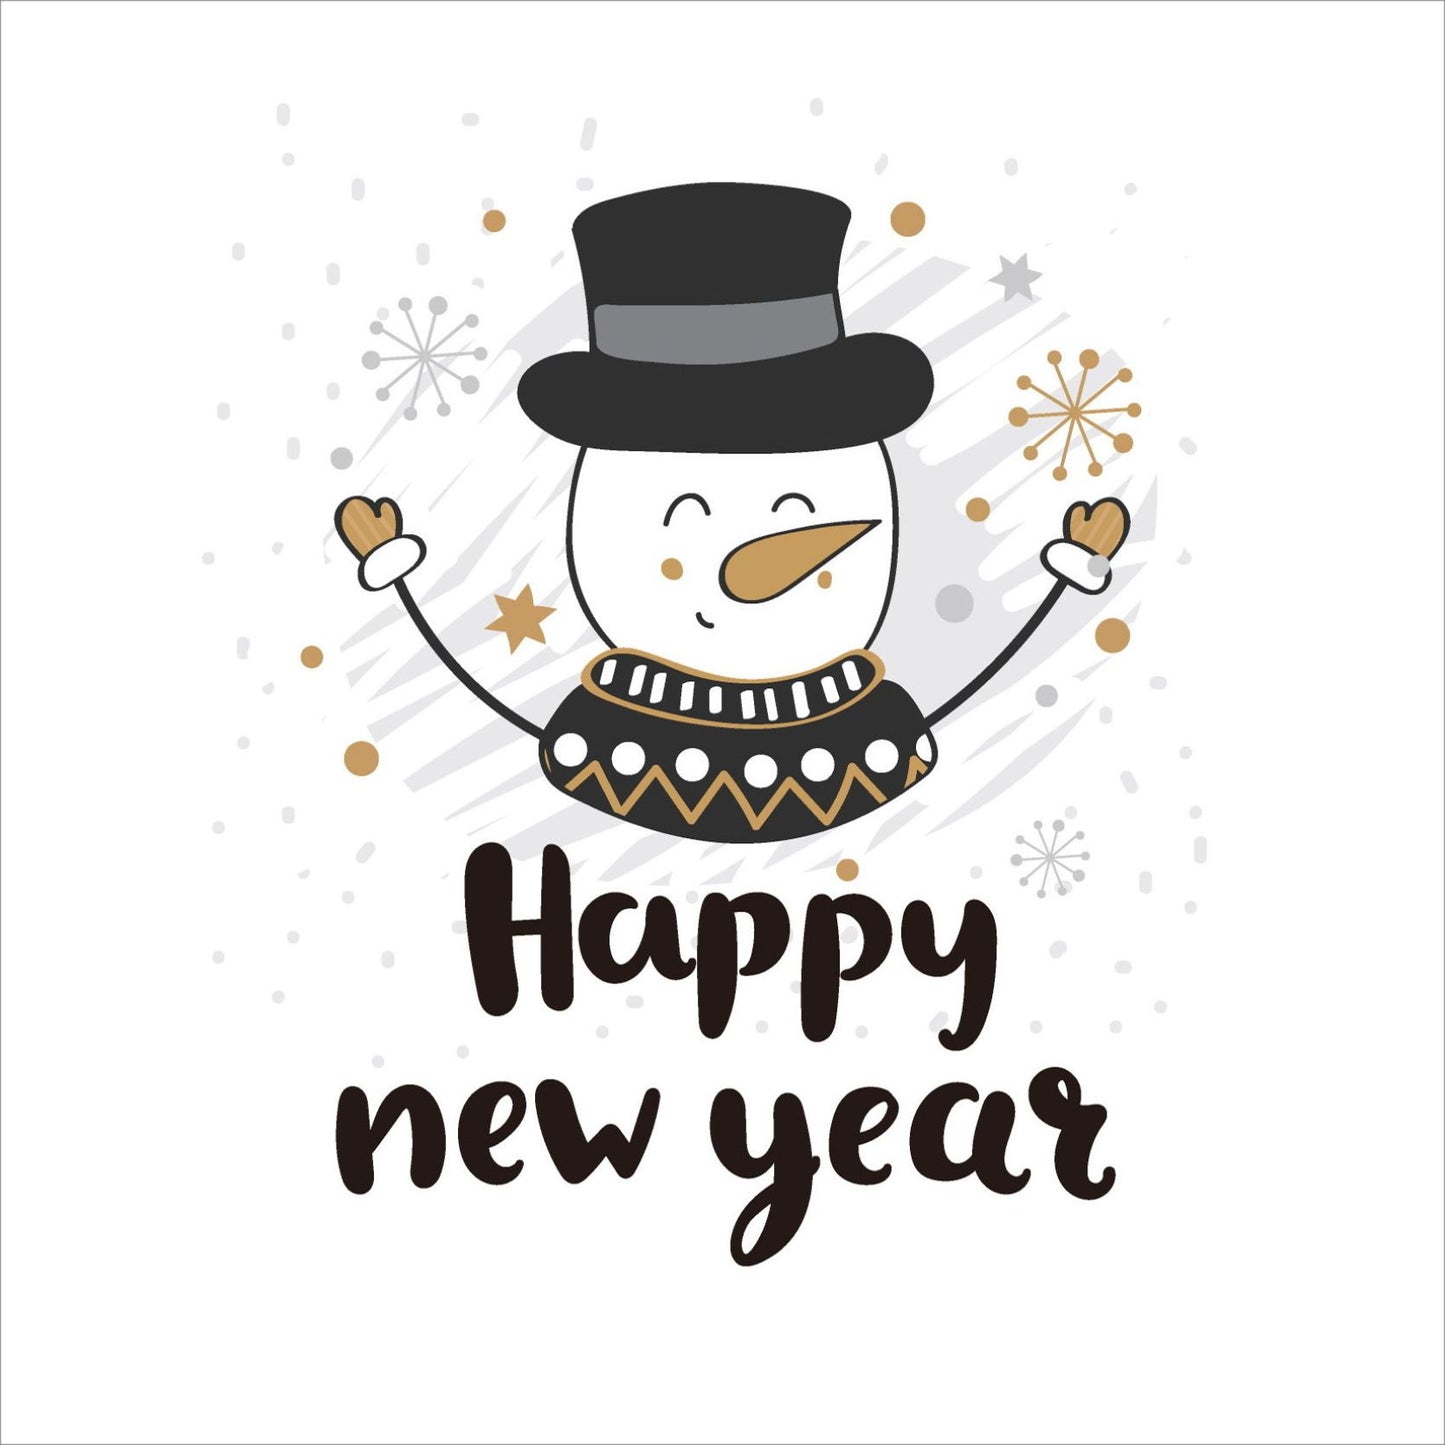 Søte julekort i håndtegnet cartoon. 10 pk. Fargemyanser i grå, sort, hvit og gull. Motiv av snømann med flosshatt. Tekst på kort "happy new year"